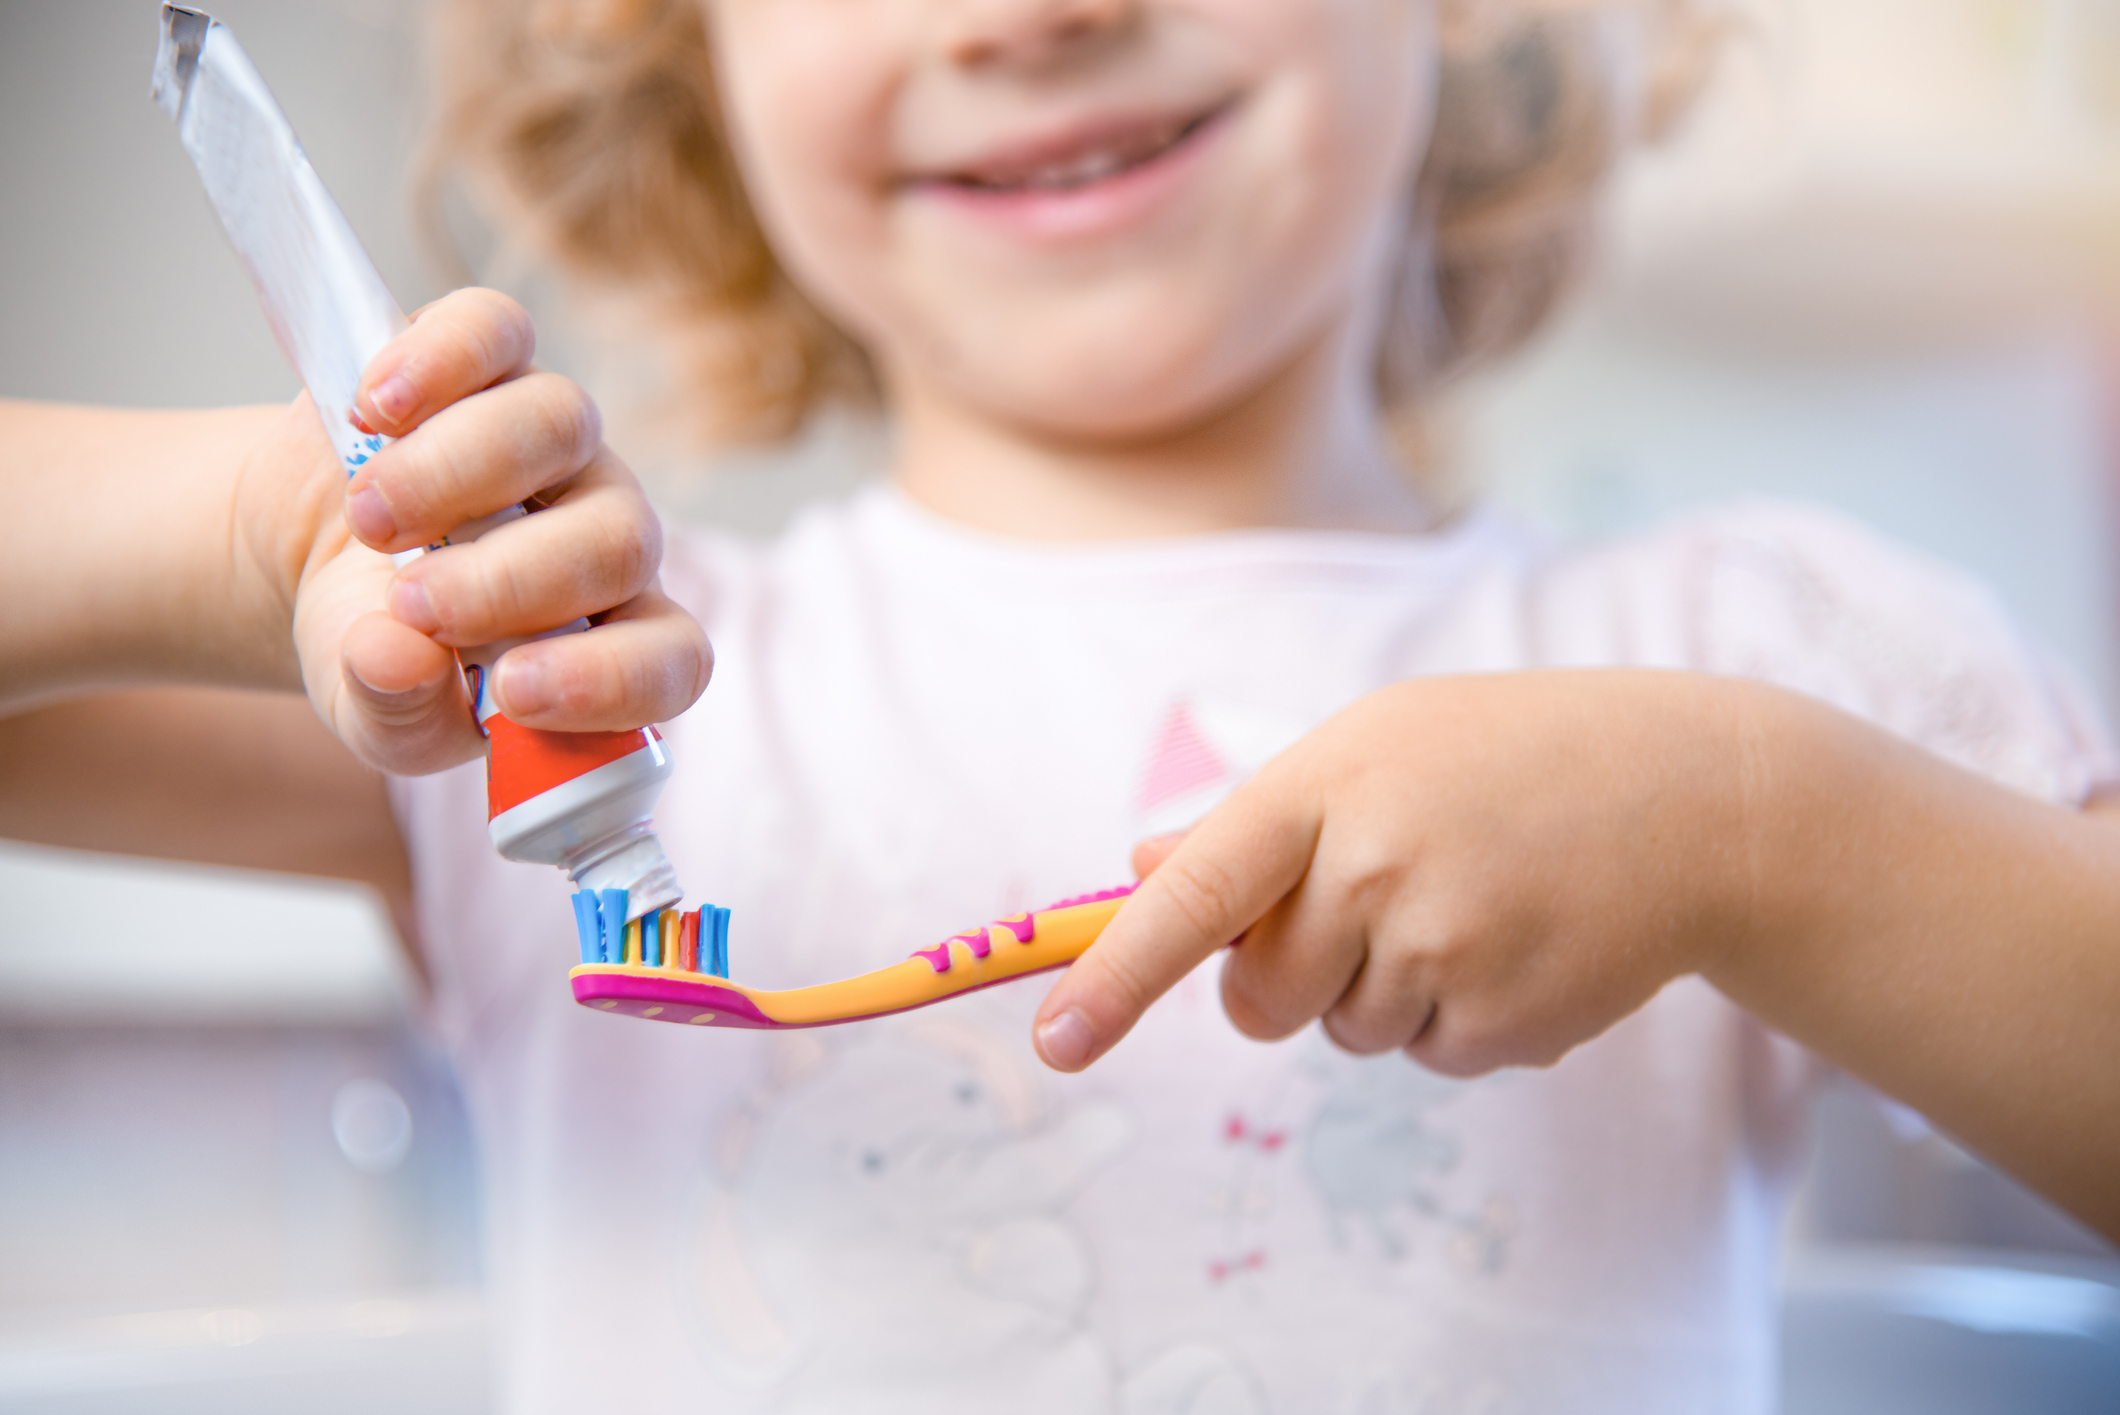 Πώς να να πείσεις το παιδί σου να πλένει τακτικά και σχολαστικά τα δόντια του